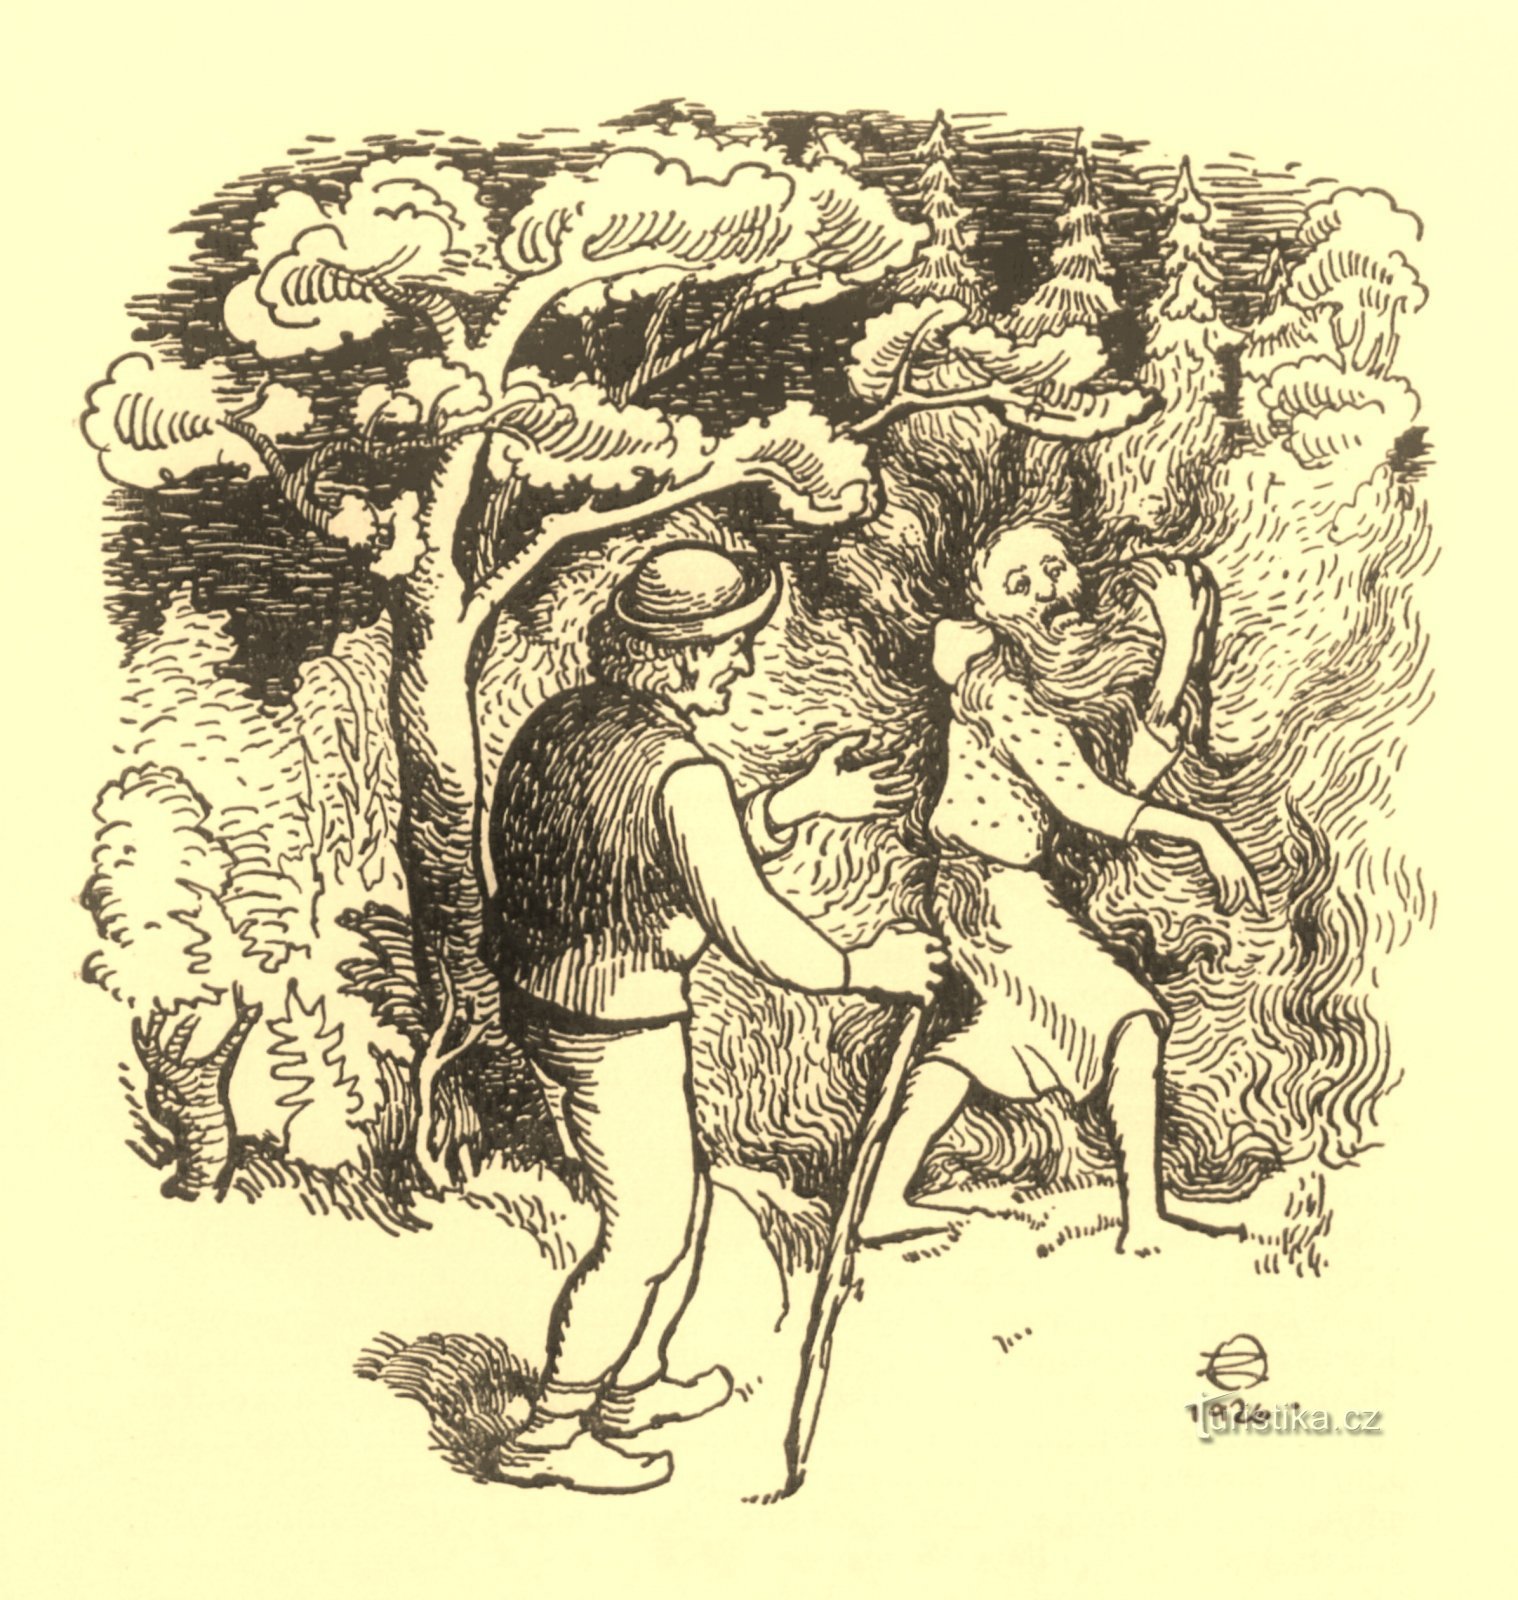 Ohnivý muž podle ilustrátora Otakara Zeminy